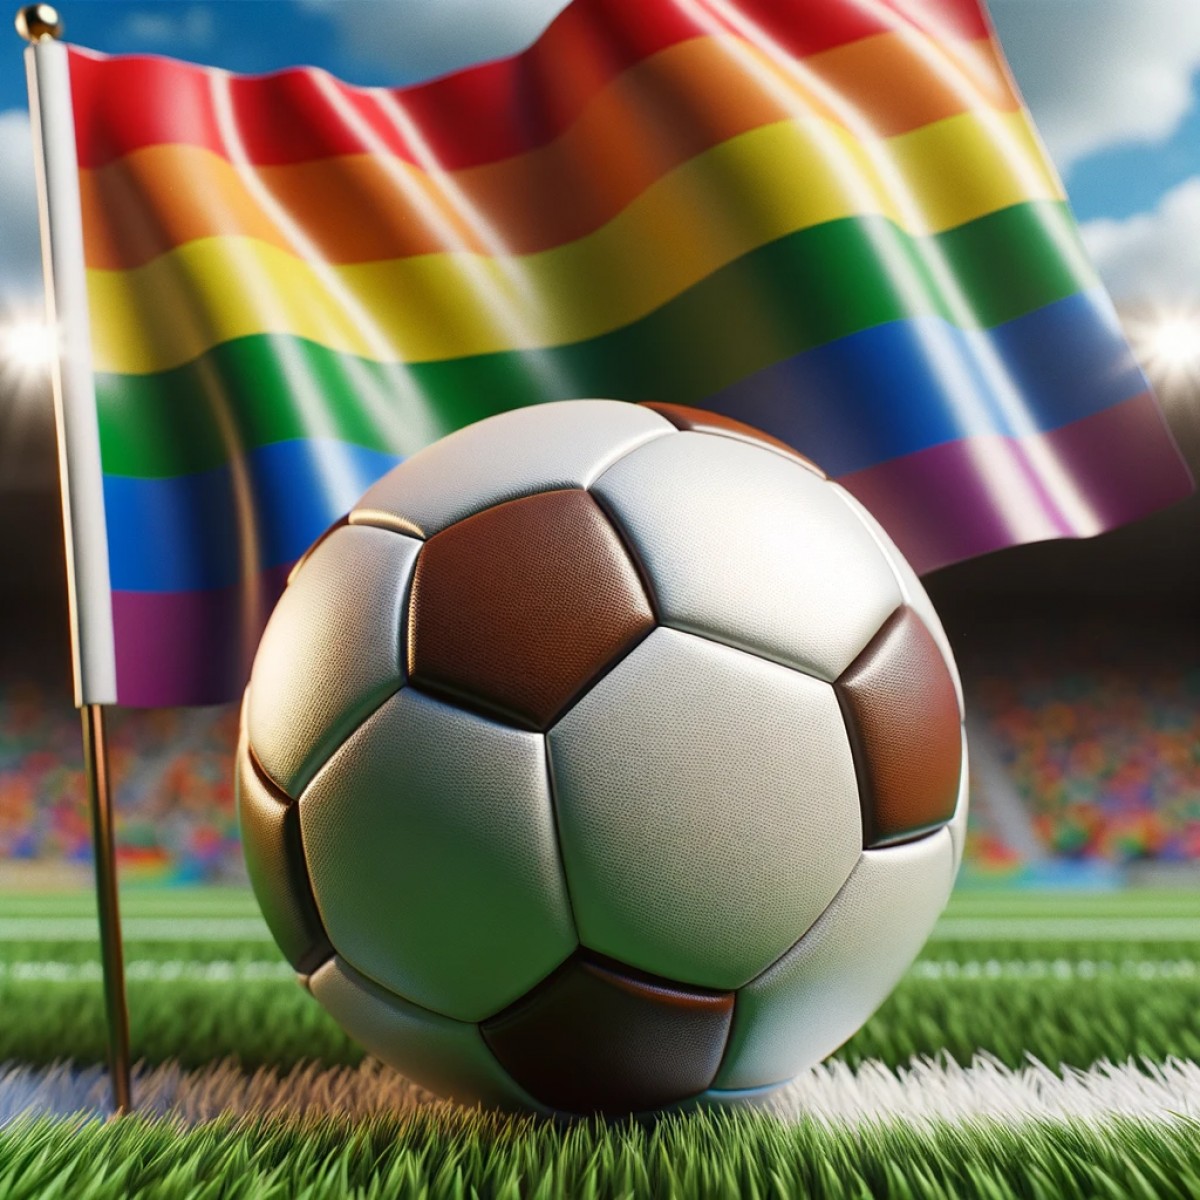 Football : L'offensive du ministère contre l'homophobie dans les enceintes sportives